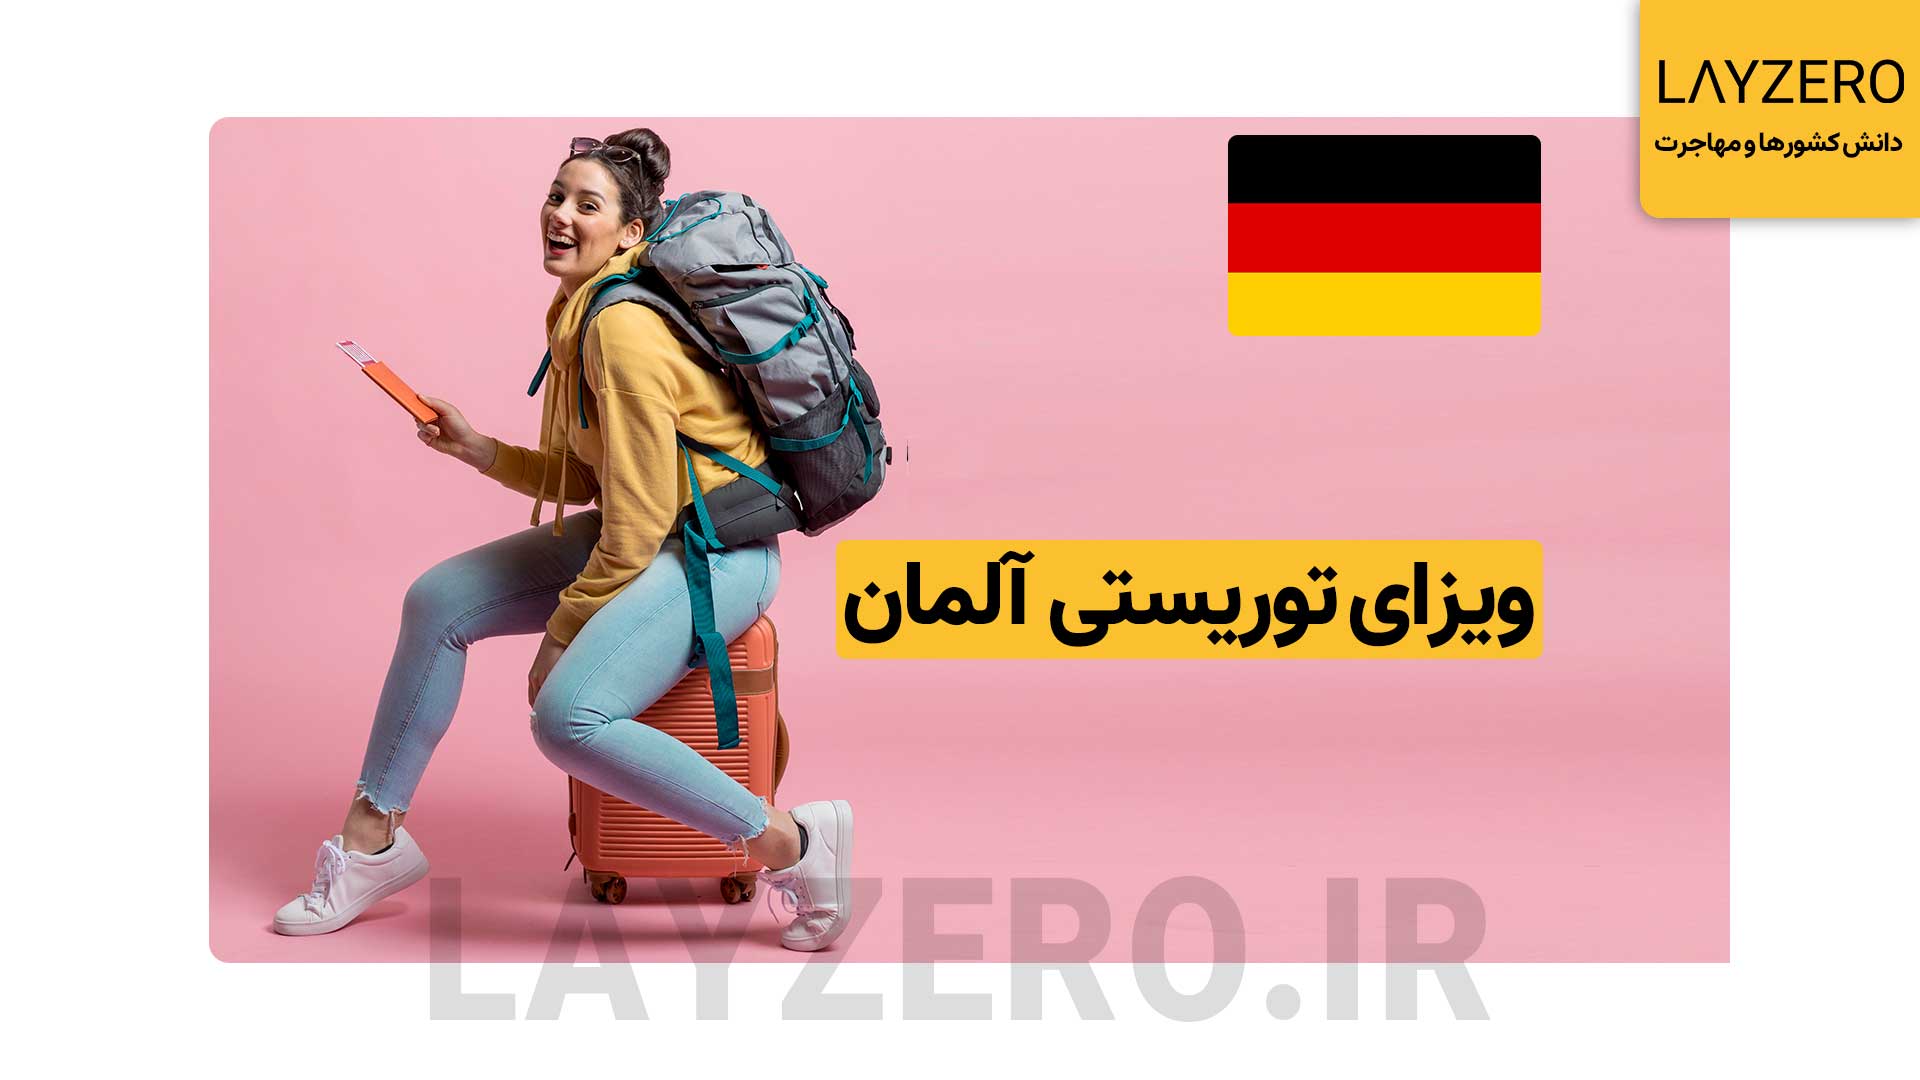 ویزای توریستی آلمان: شرایط، مدارک، هزینه، با و بدون دعوتنامه ویزای توریستی آلمان: شرایط، مدارک، هزینه، با و بدون دعوتنامه